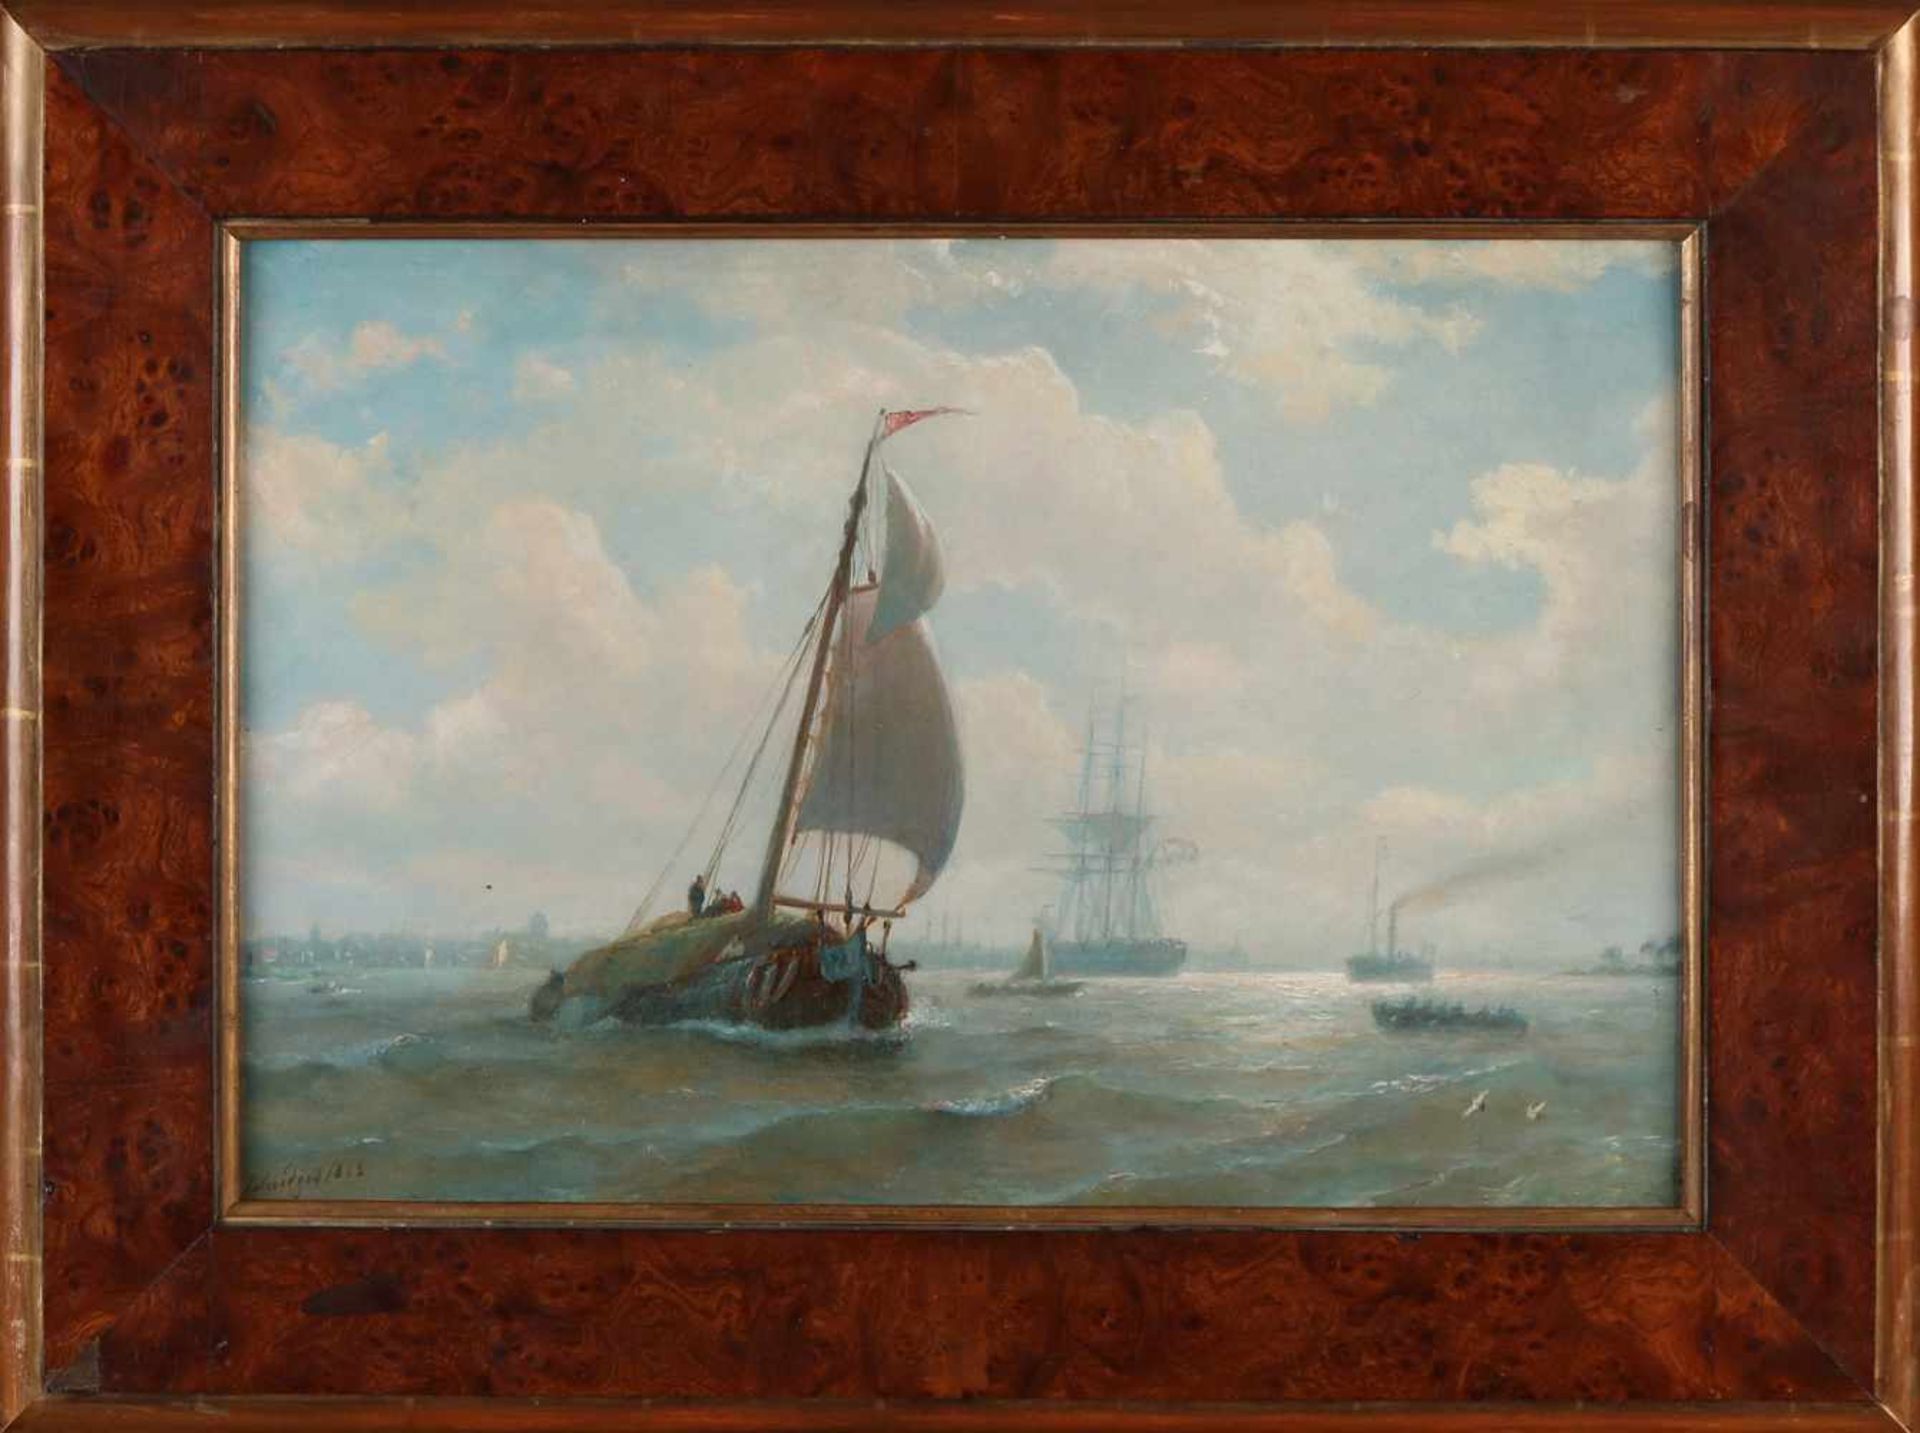 PP Schiedges I. 1812 - 1876. Versand auf der IJ in Amsterdam. Ölfarbe auf Holz. Abmessungen: H 33